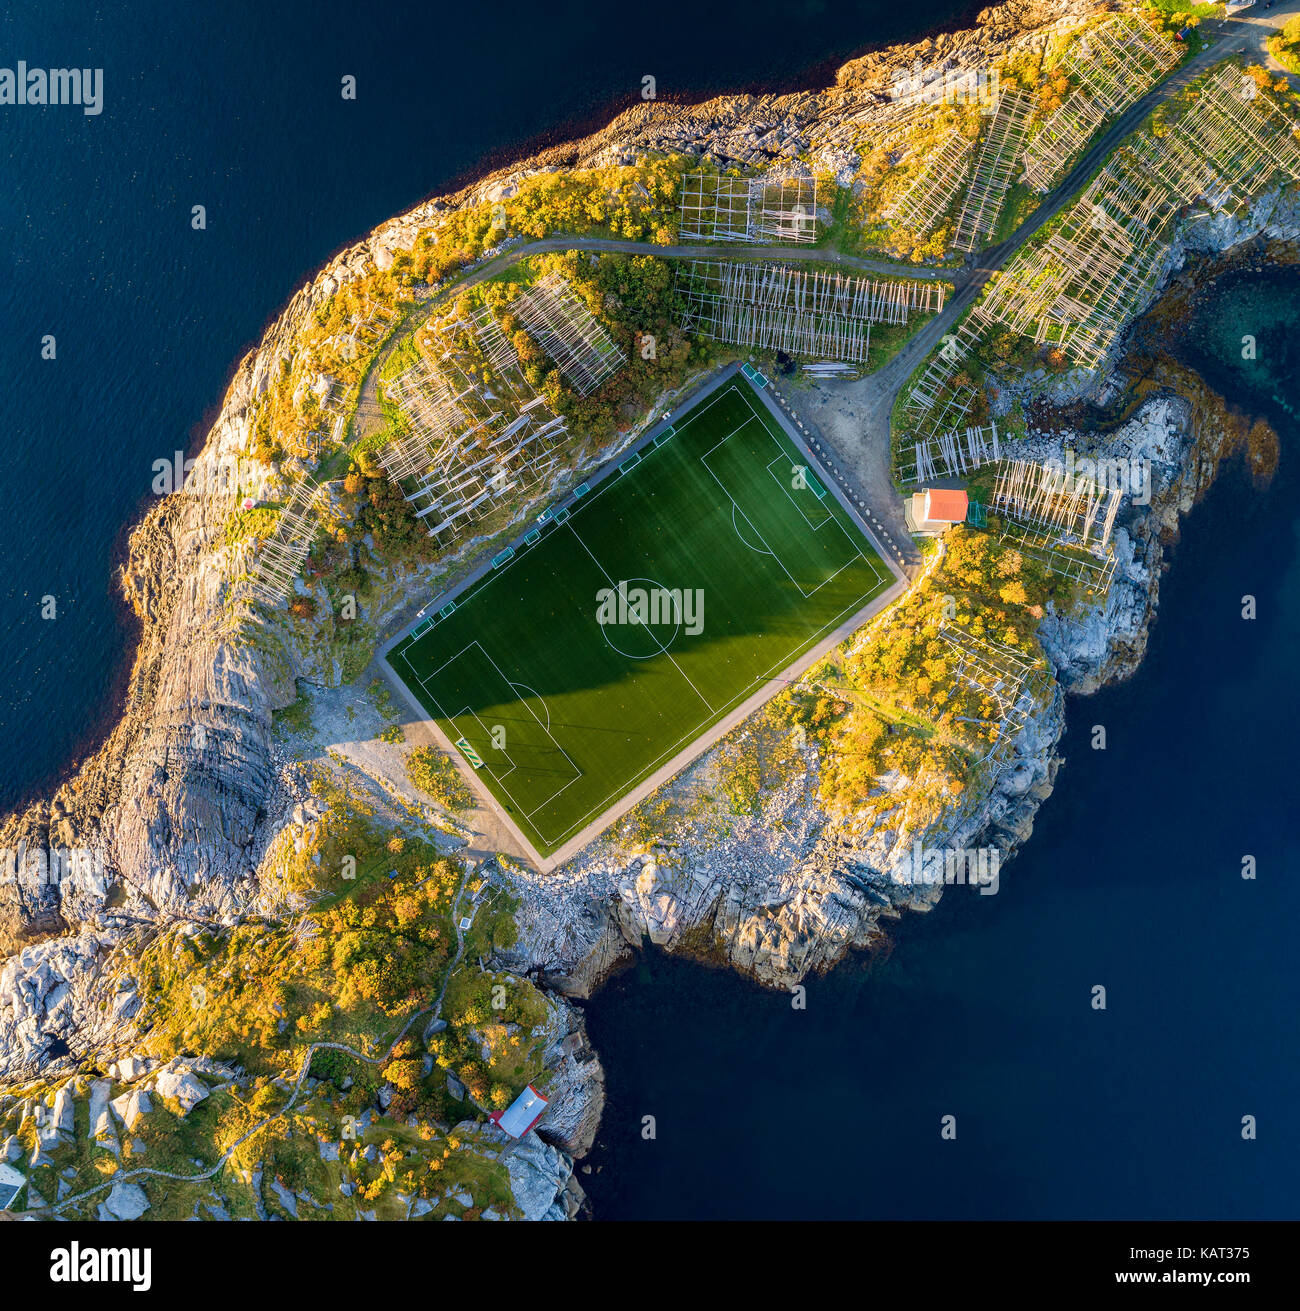 Terrain de football de Henningsvær à partir de ci-dessus. Henningsvær est un village de pêcheurs situé sur plusieurs petites îles dans l'archipel des Lofoten en Norvège Banque D'Images